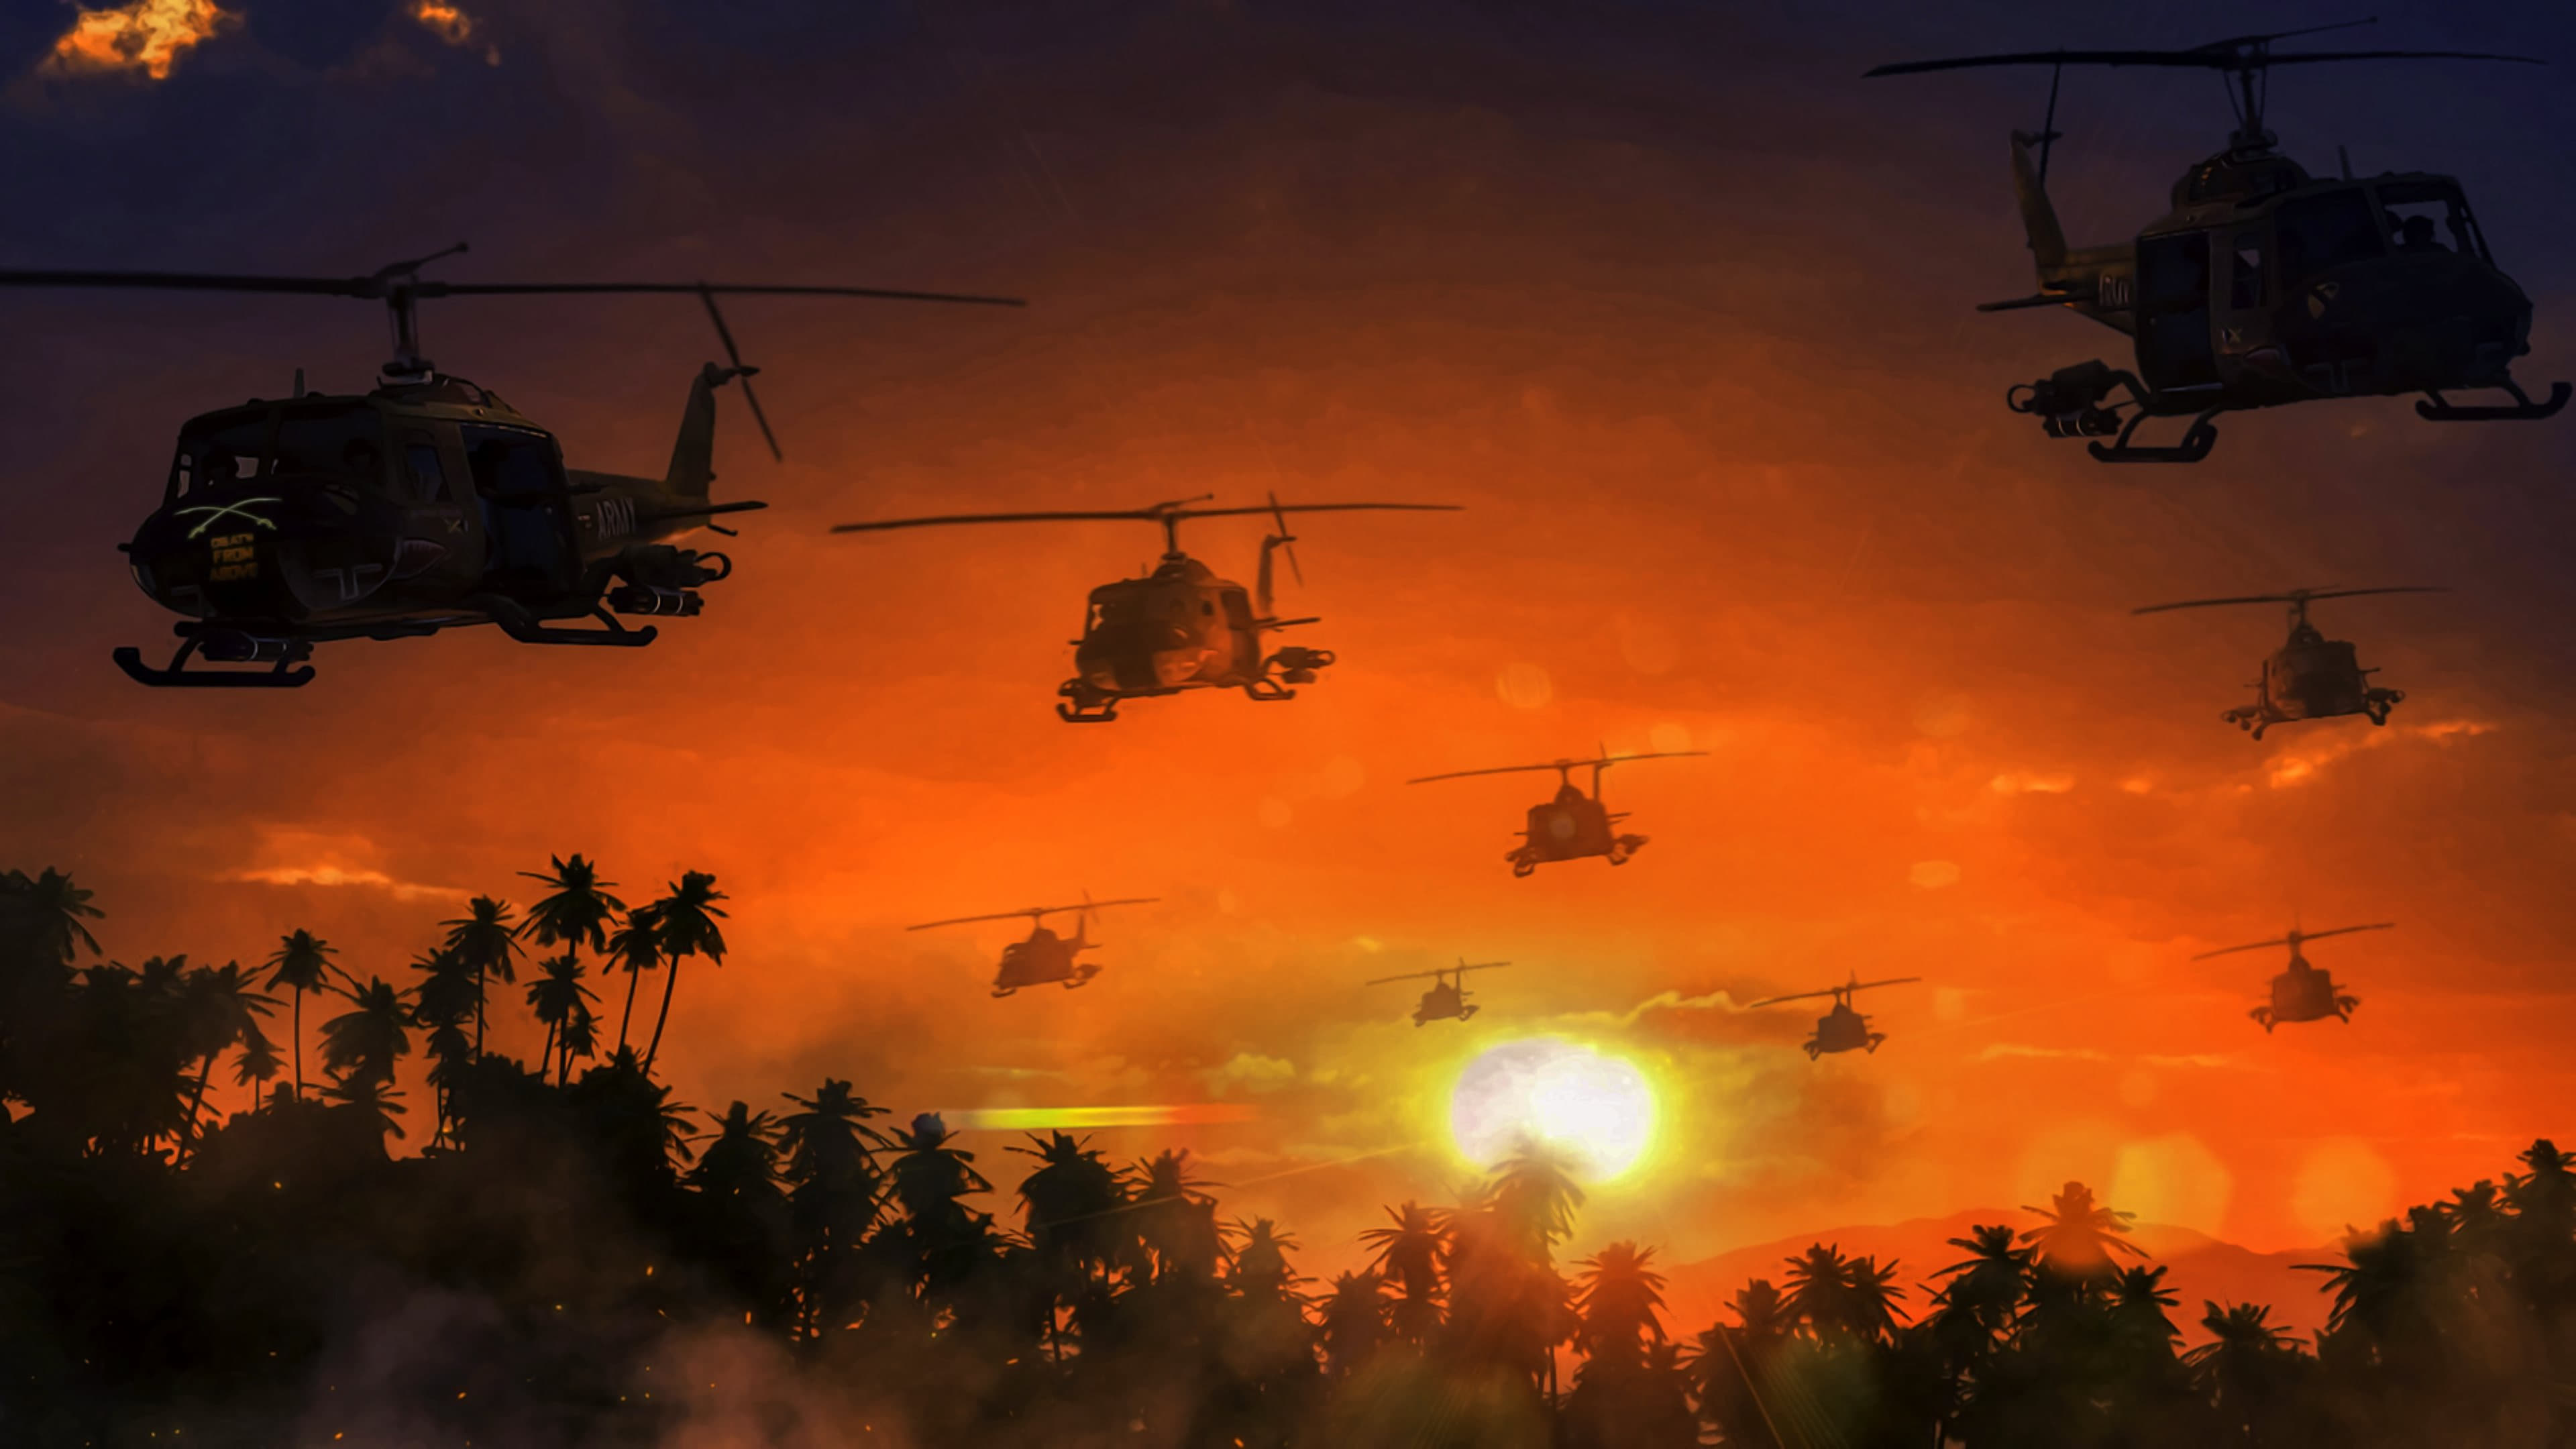 Image du film Apocalypse Now 4dvxz8qgecxyh2s5oobyjjiquhxjpg